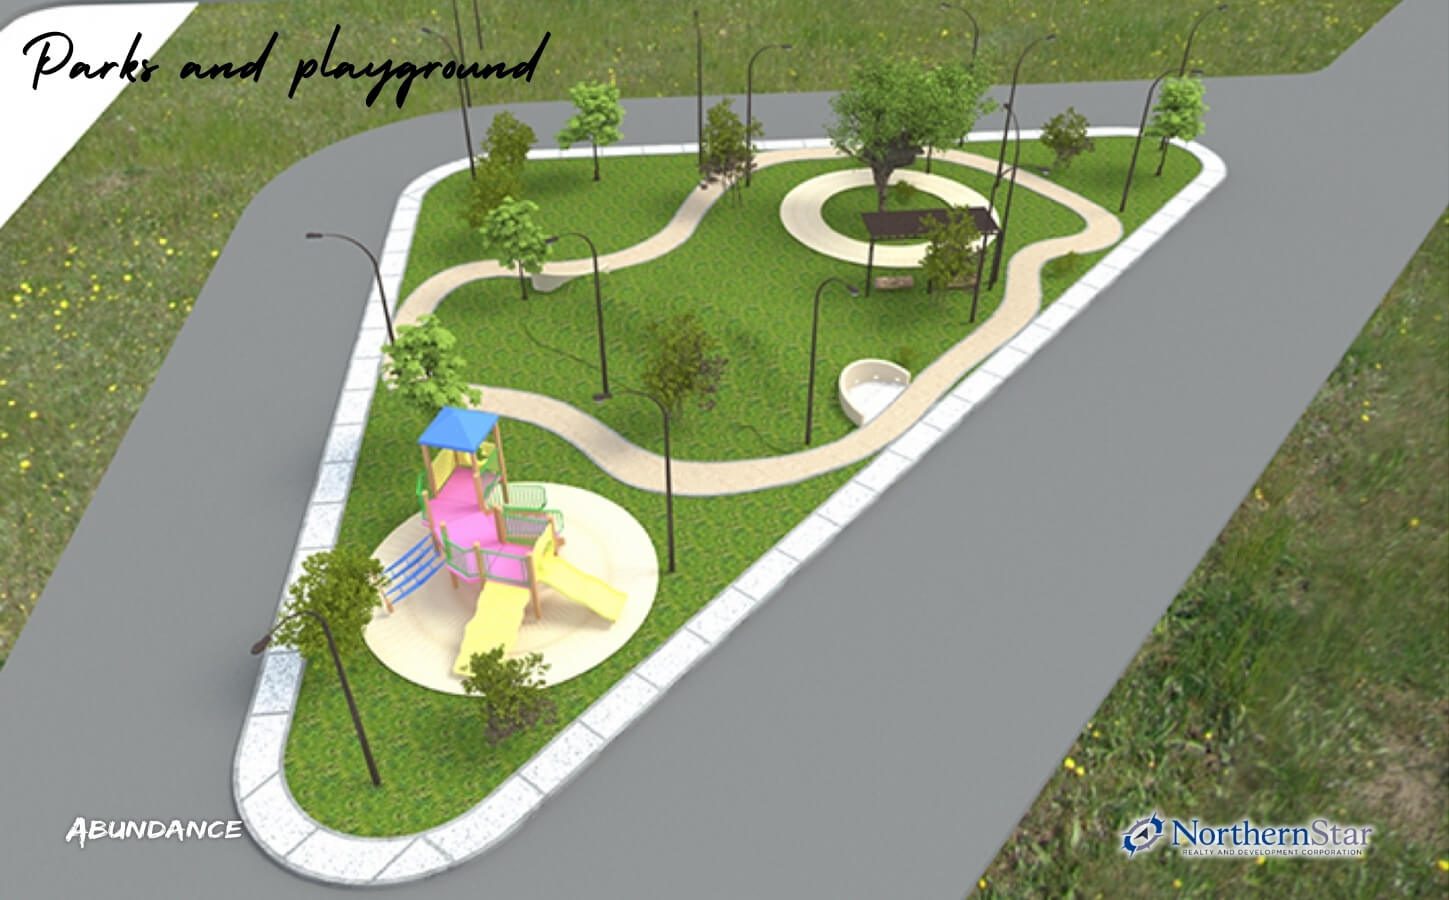 North Grove Pampanga's parks and playground